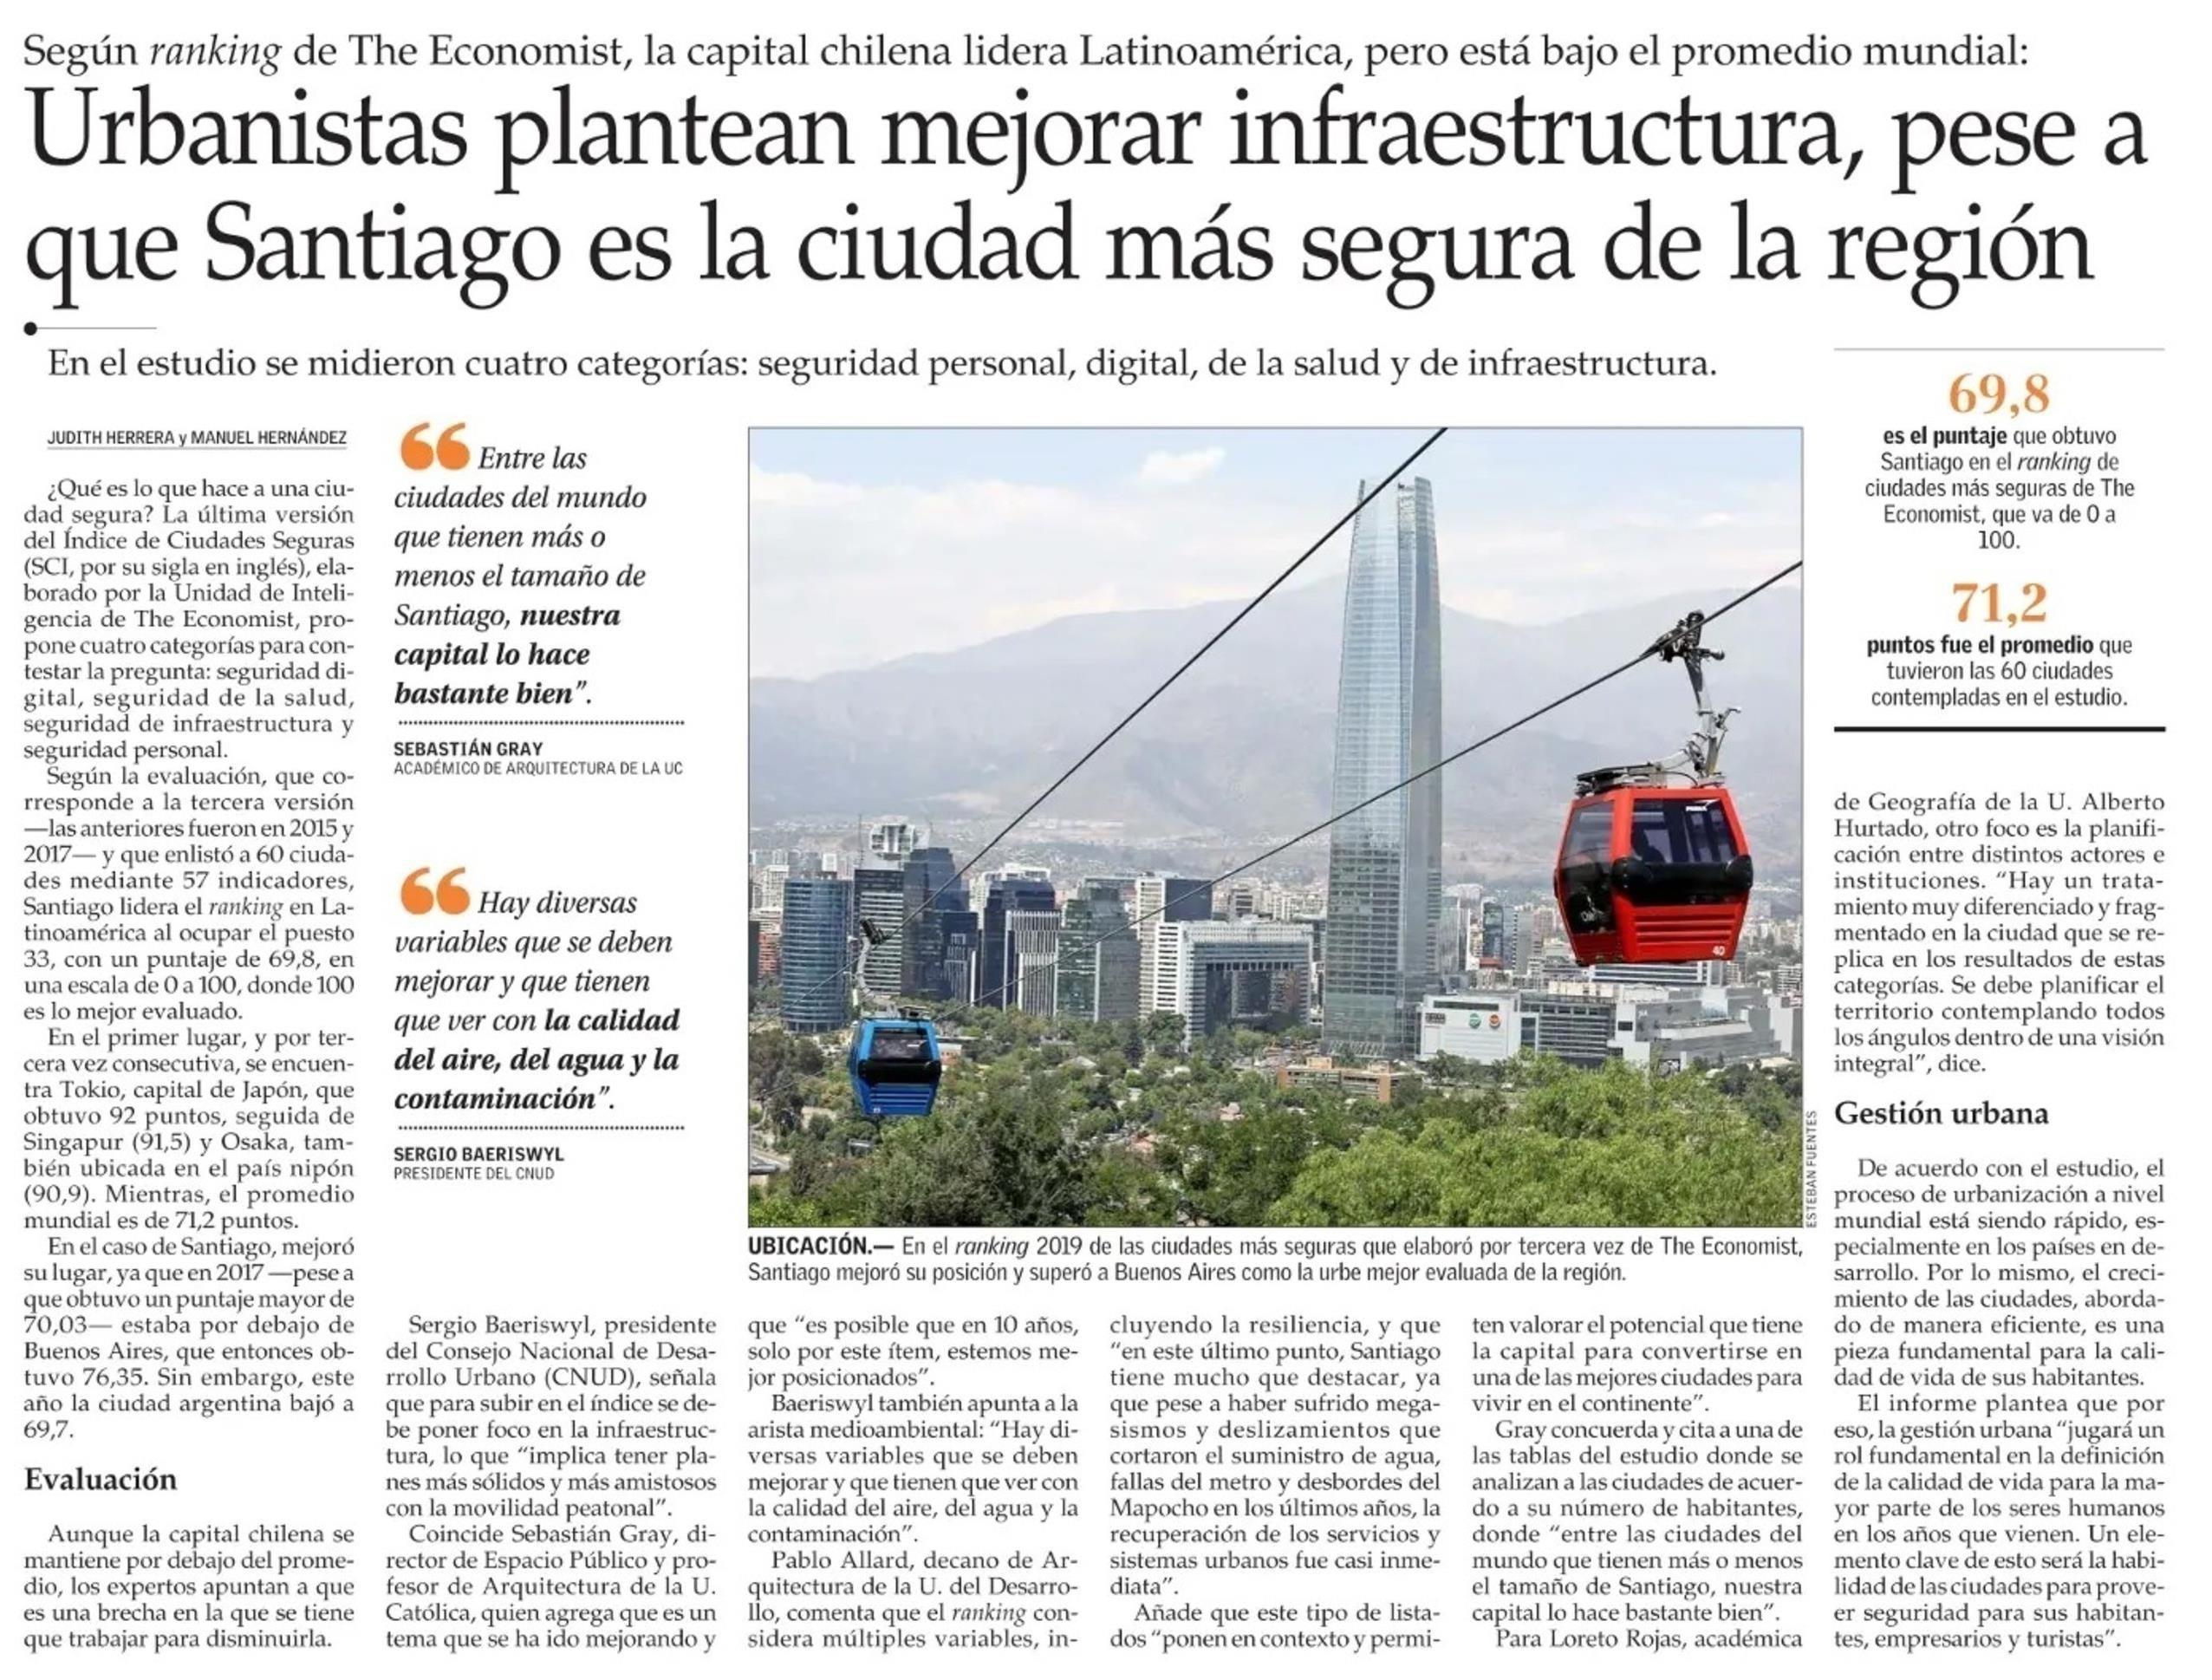 19-09-03_Profesor_ARQ_UC_habla_sobre_la_importancia_de_mejorar_la_infraestructura_para_hacer_de_Santiago_una_ciudad_mas_segura.jpeg